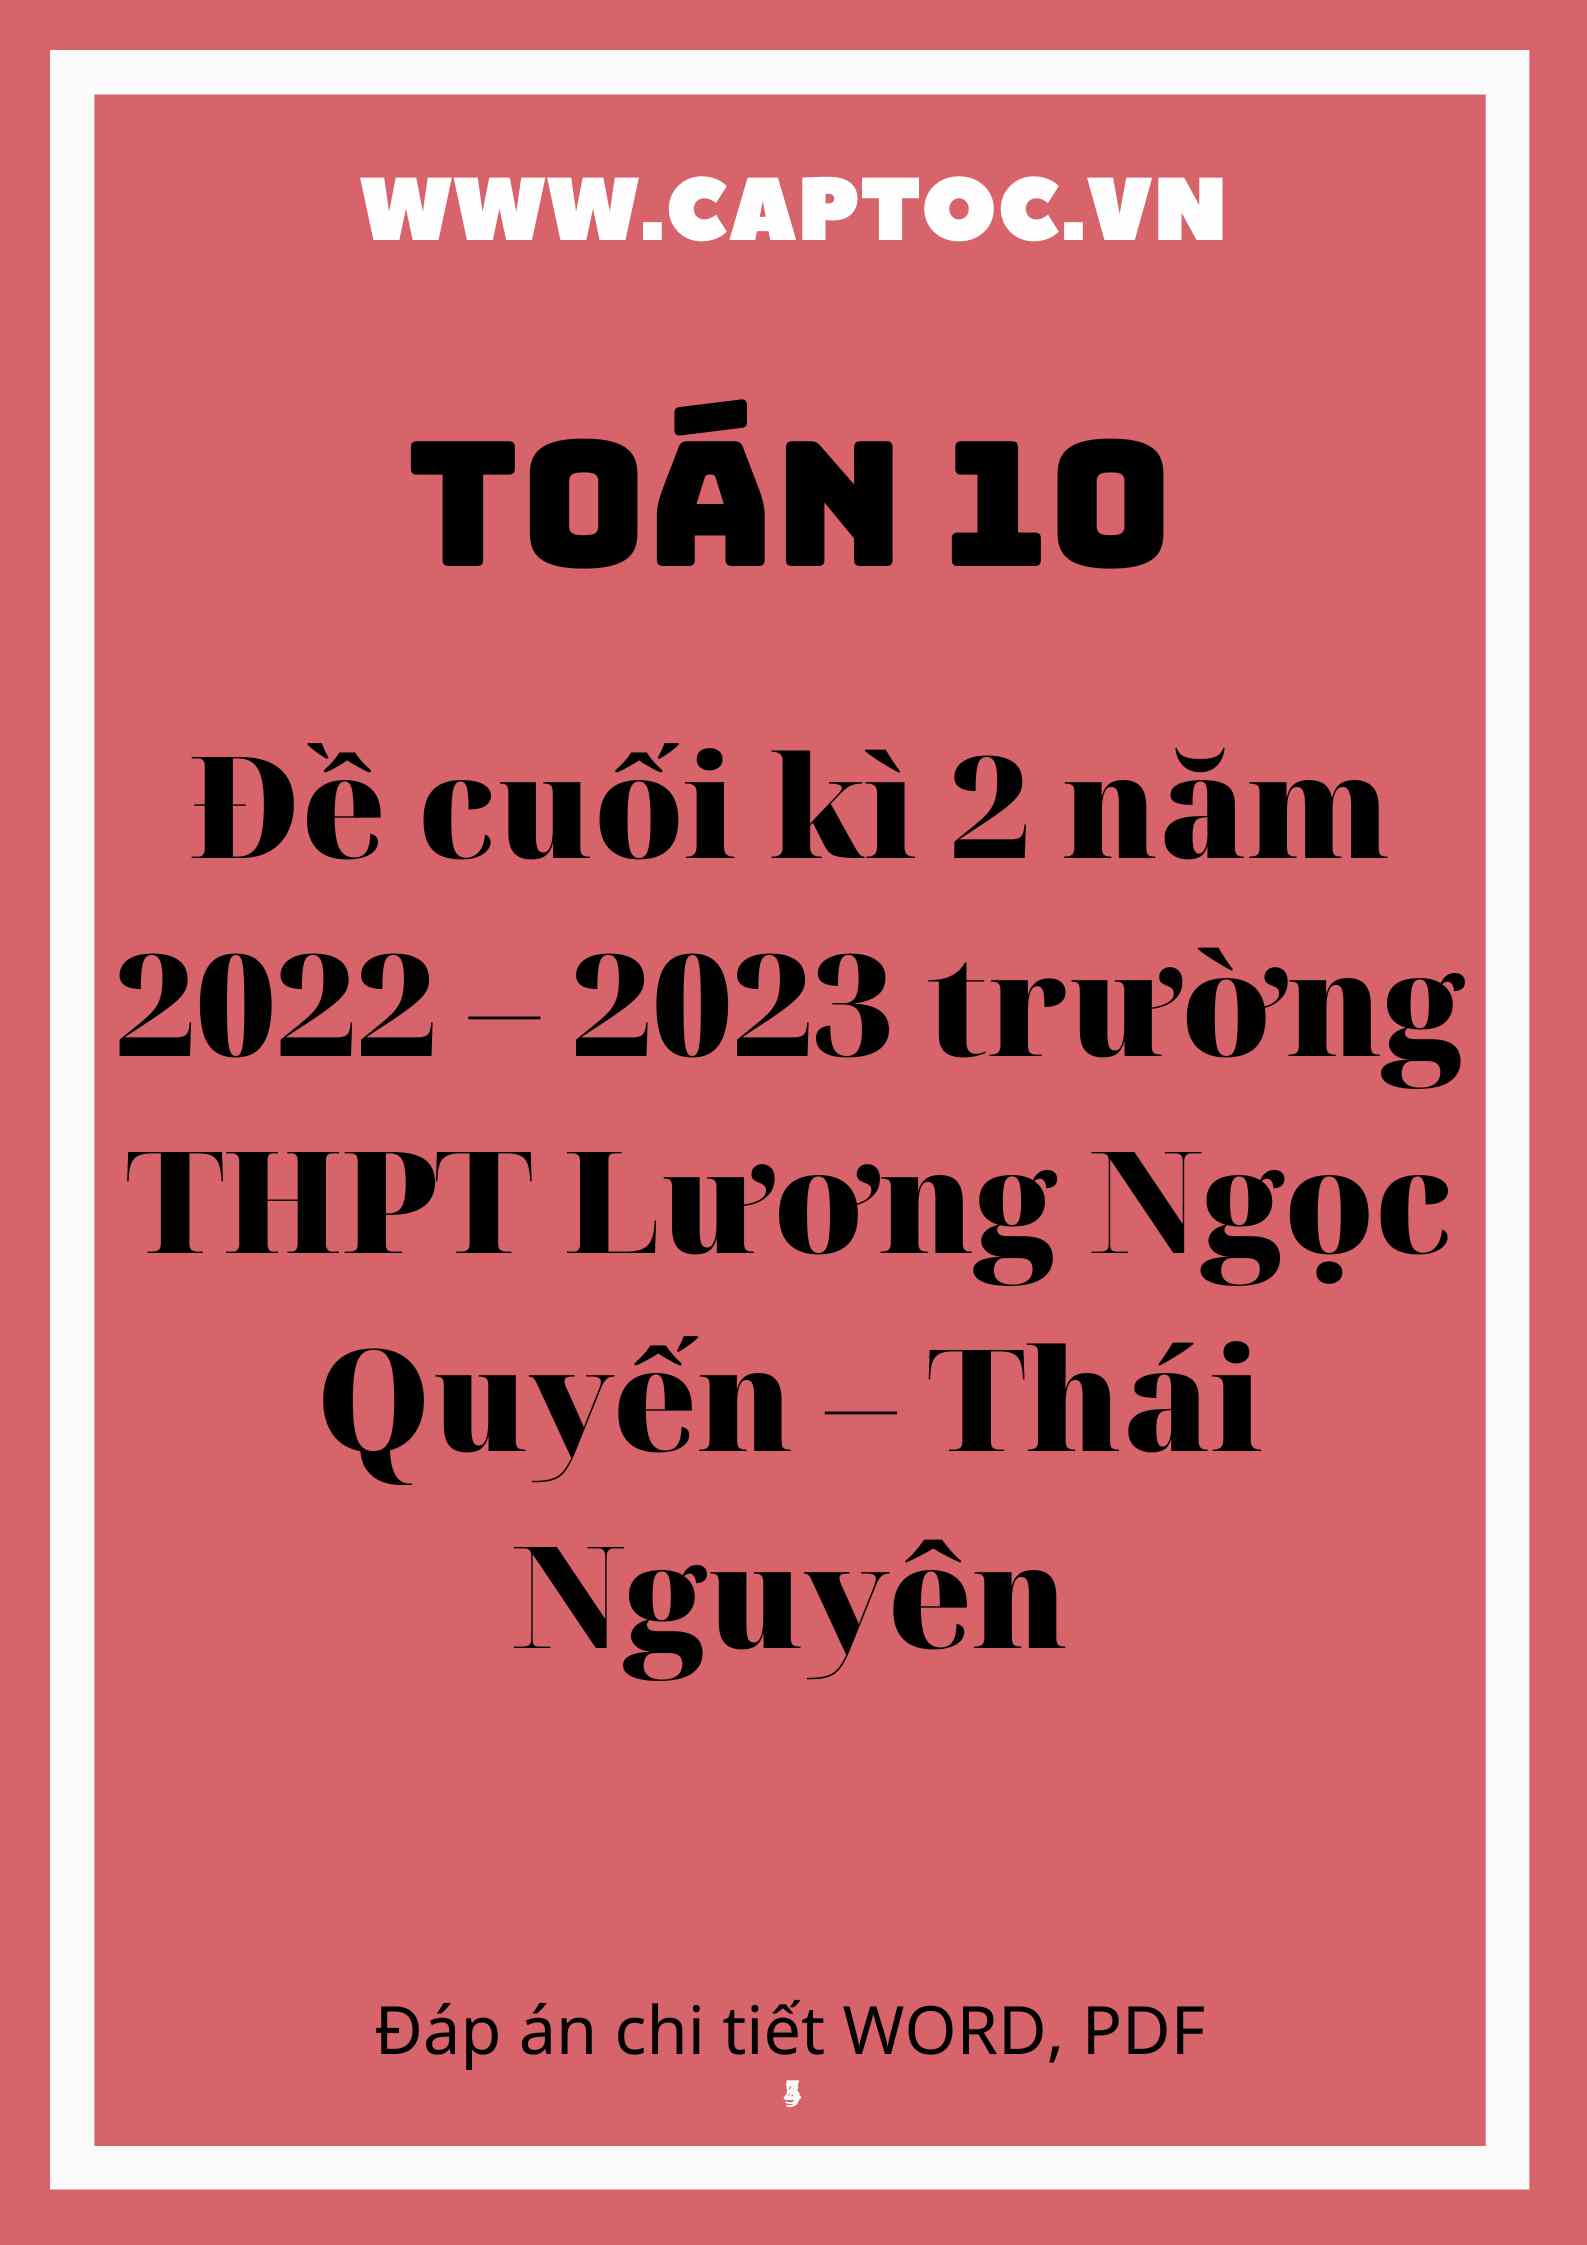 Đề cuối kì 2 Toán 10 năm 2022 – 2023 trường THPT Lương Ngọc Quyến – Thái Nguyên